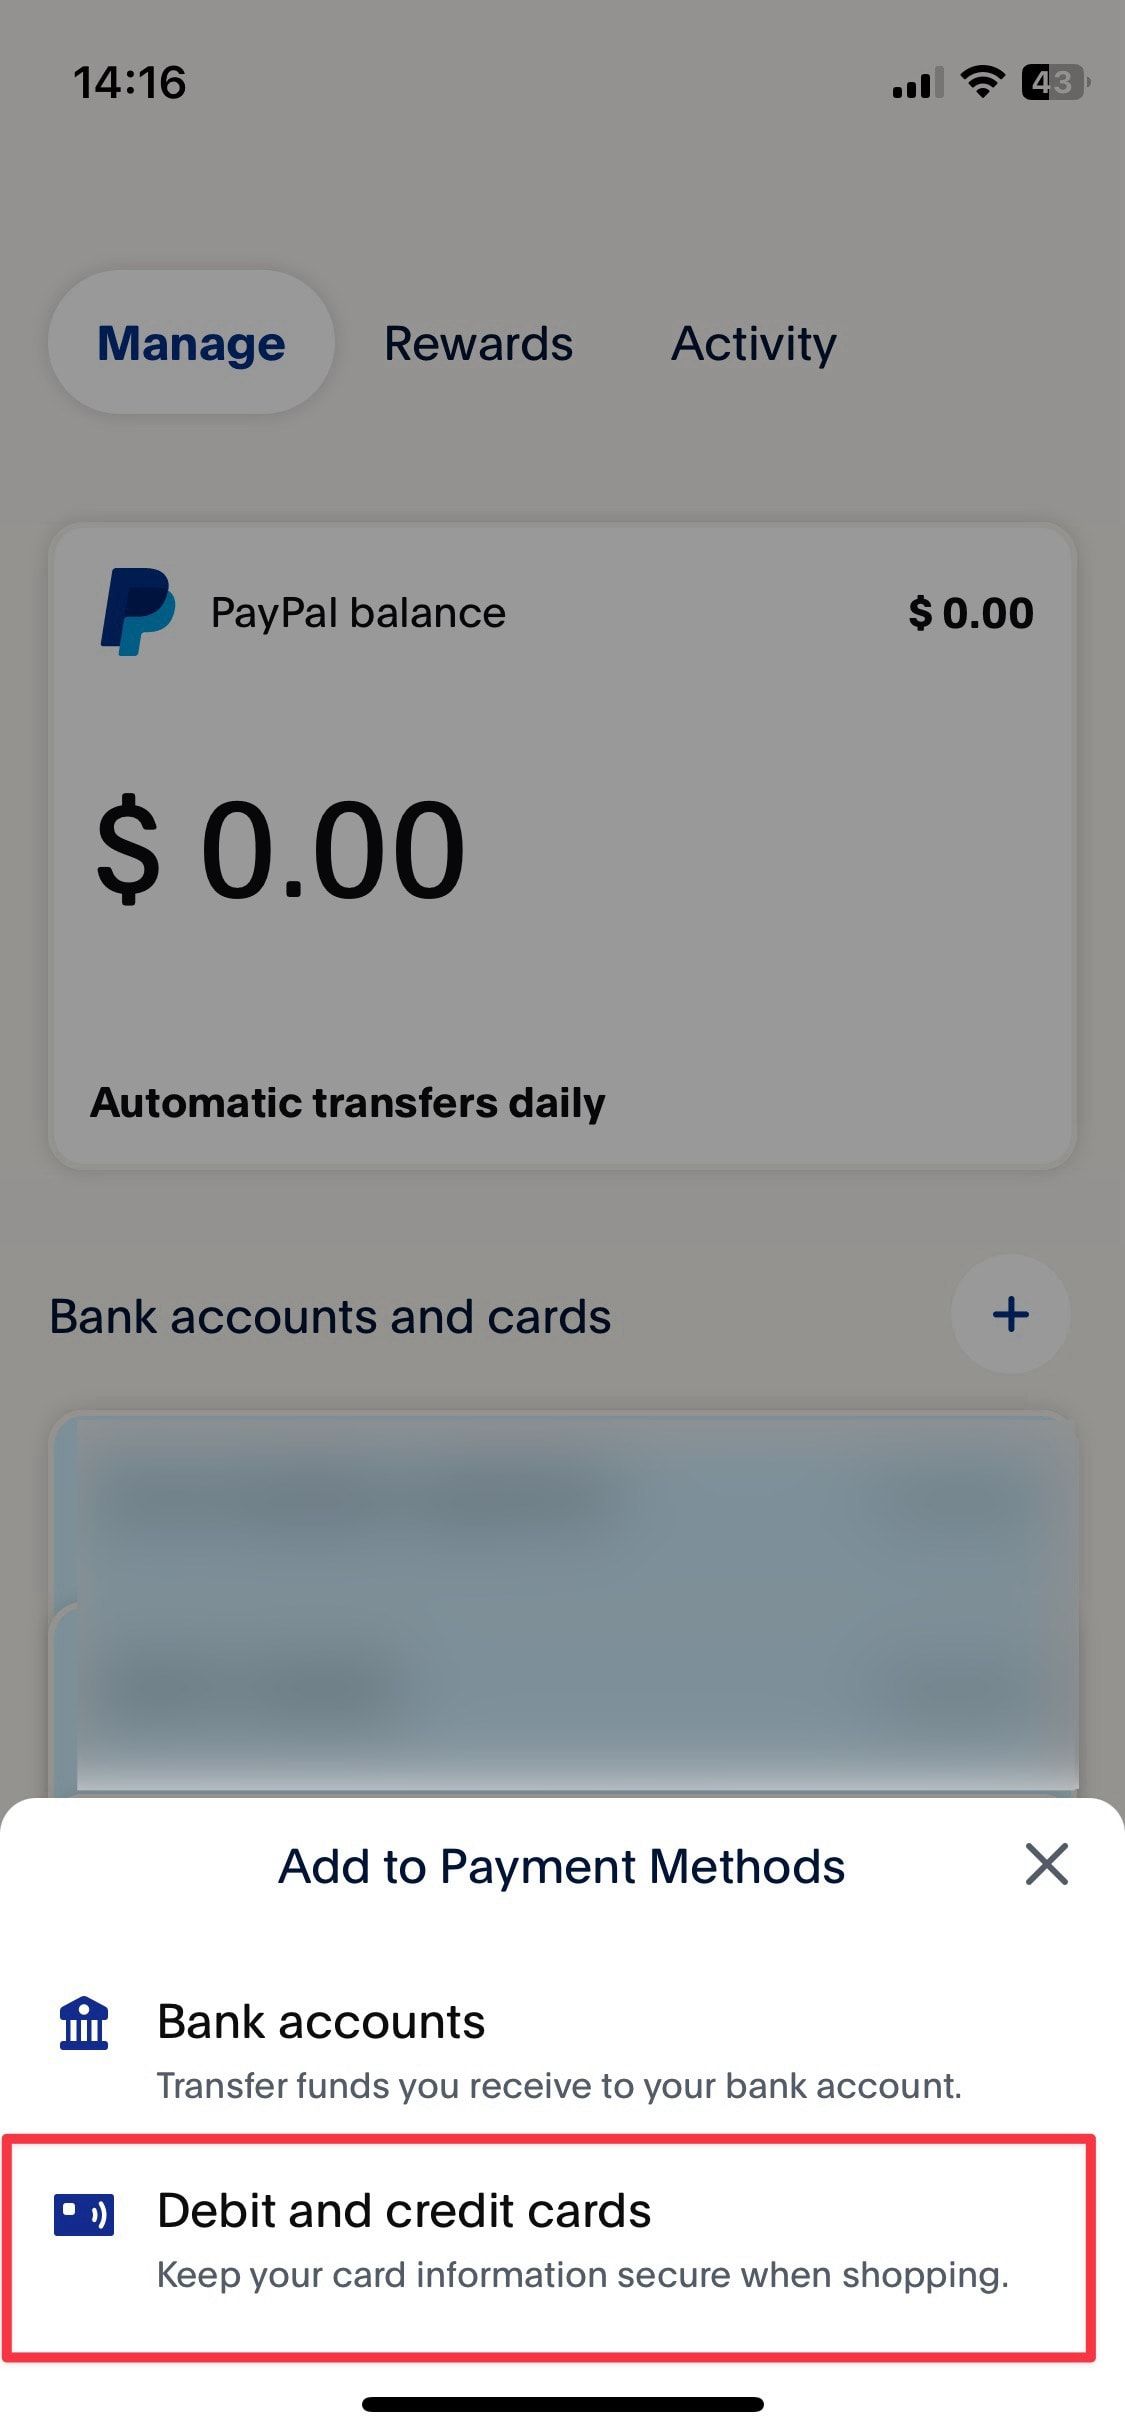 Captura de tela da página inicial do aplicativo móvel Paypal mostrando a opção de adicionar método de pagamento